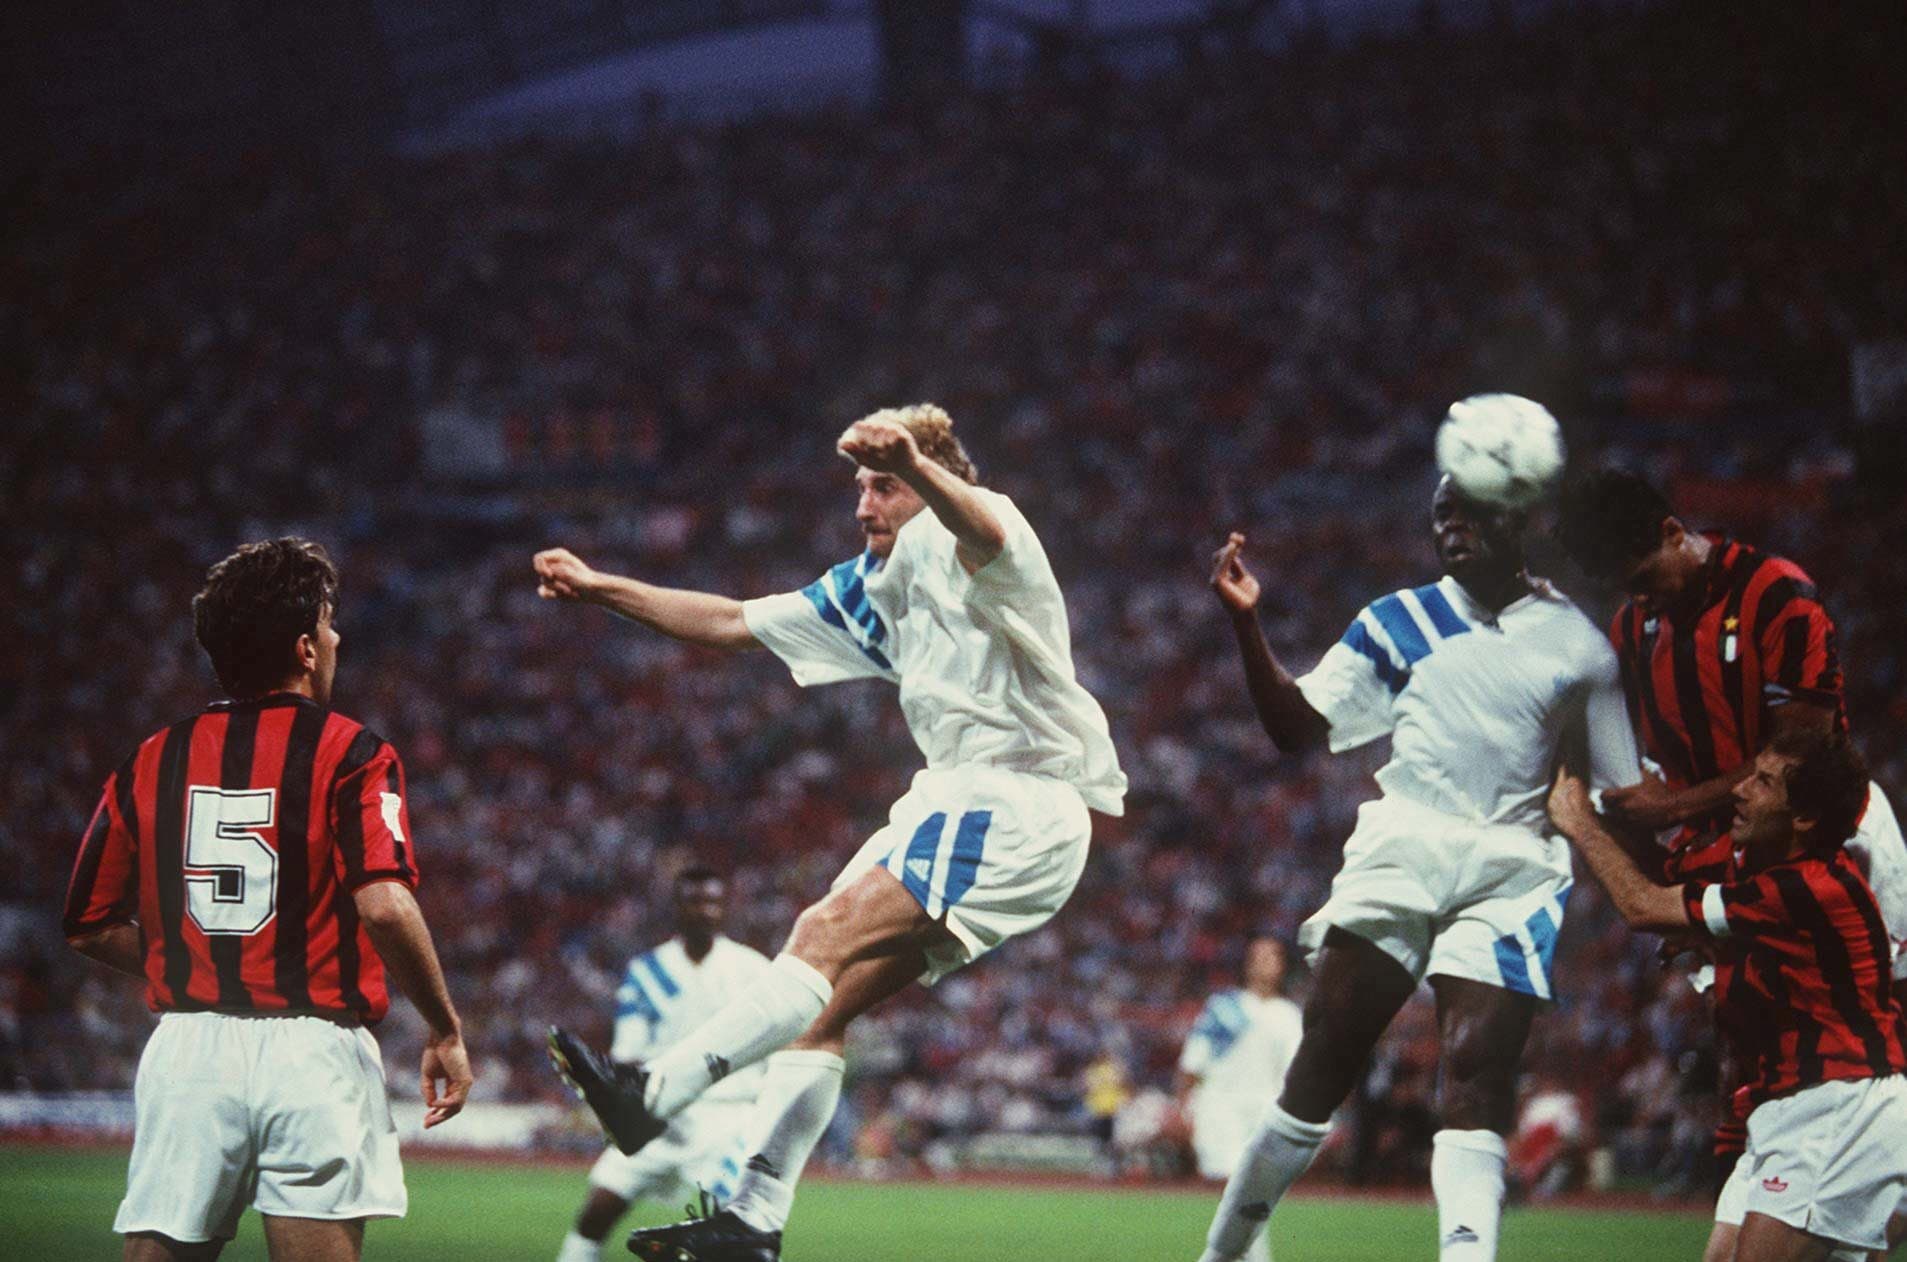 שער הניצחון של באזיל בולי שחקן מארסיי בגמר ליגת האלופות 1993 מול מילאן